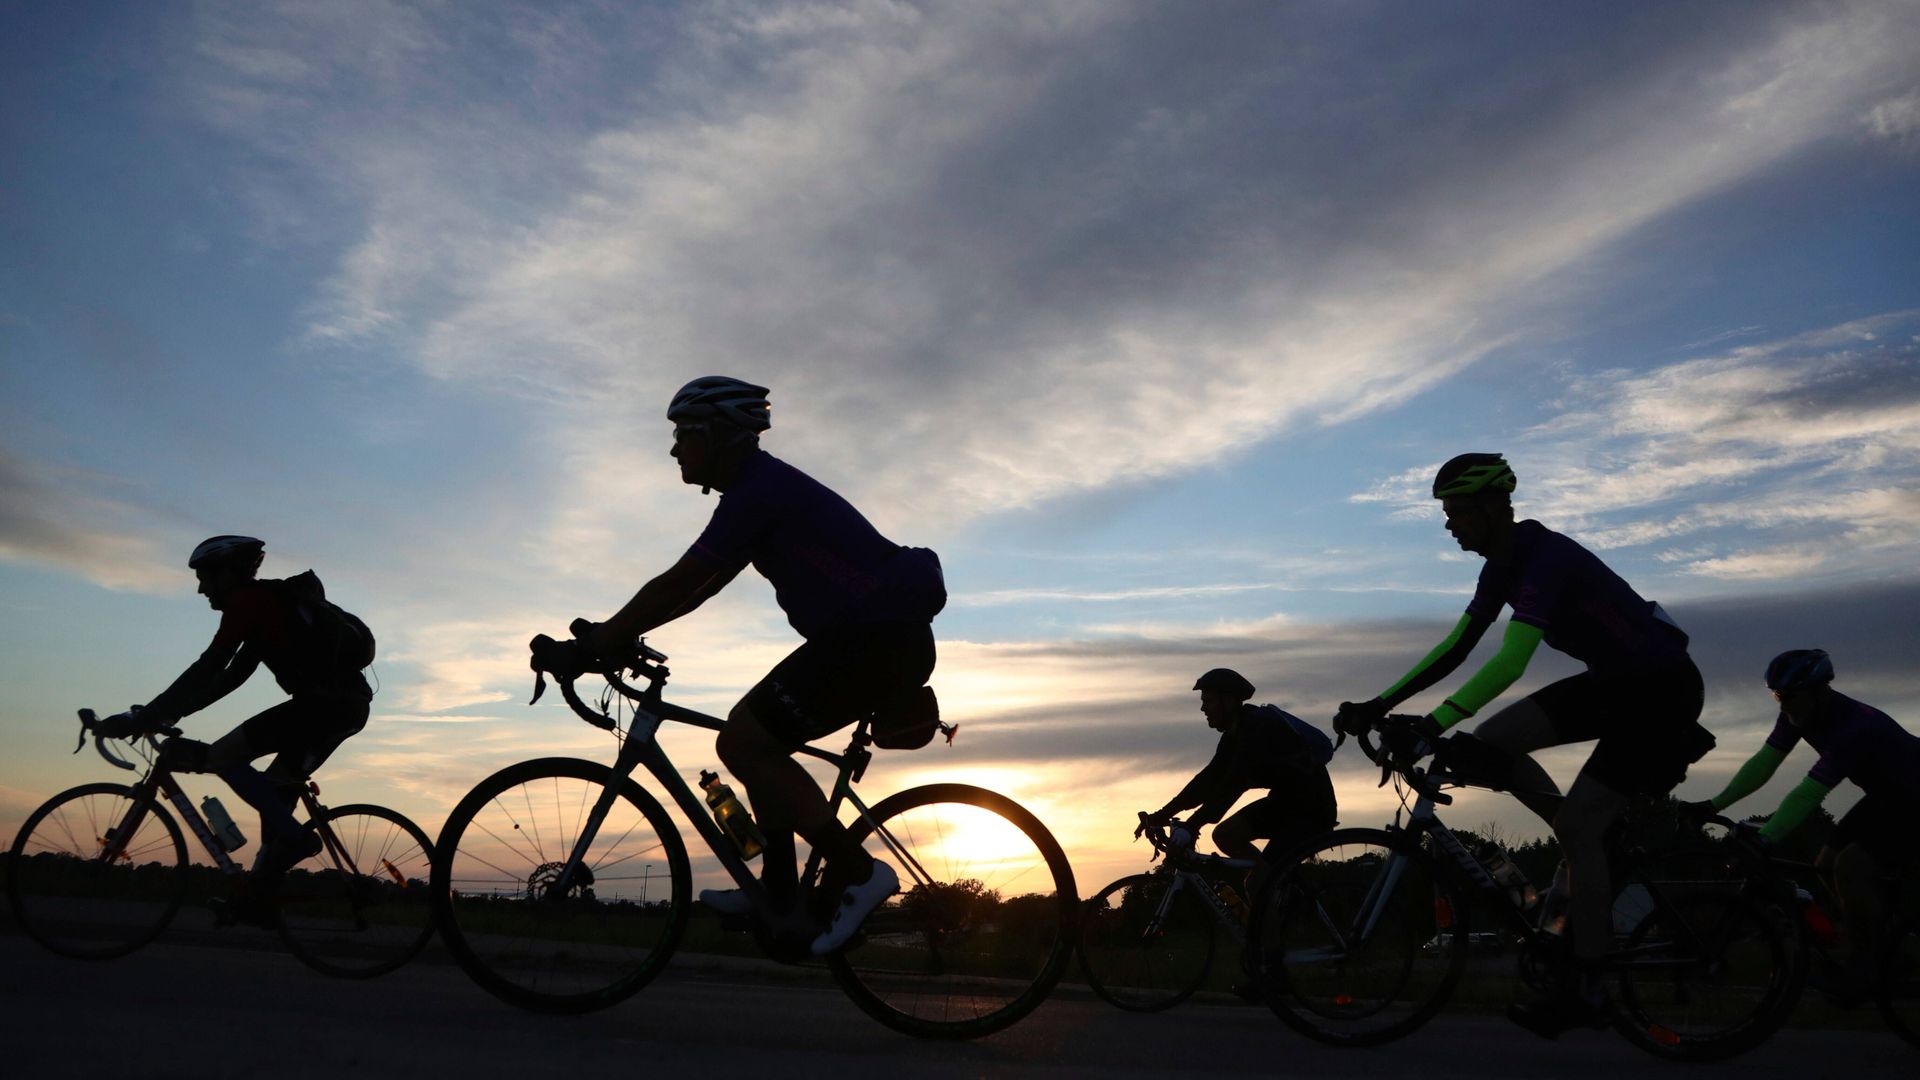 fahrradtraining: 300 kilometer rennrad fahren an einem tag - so schaffen sie den radmarathon